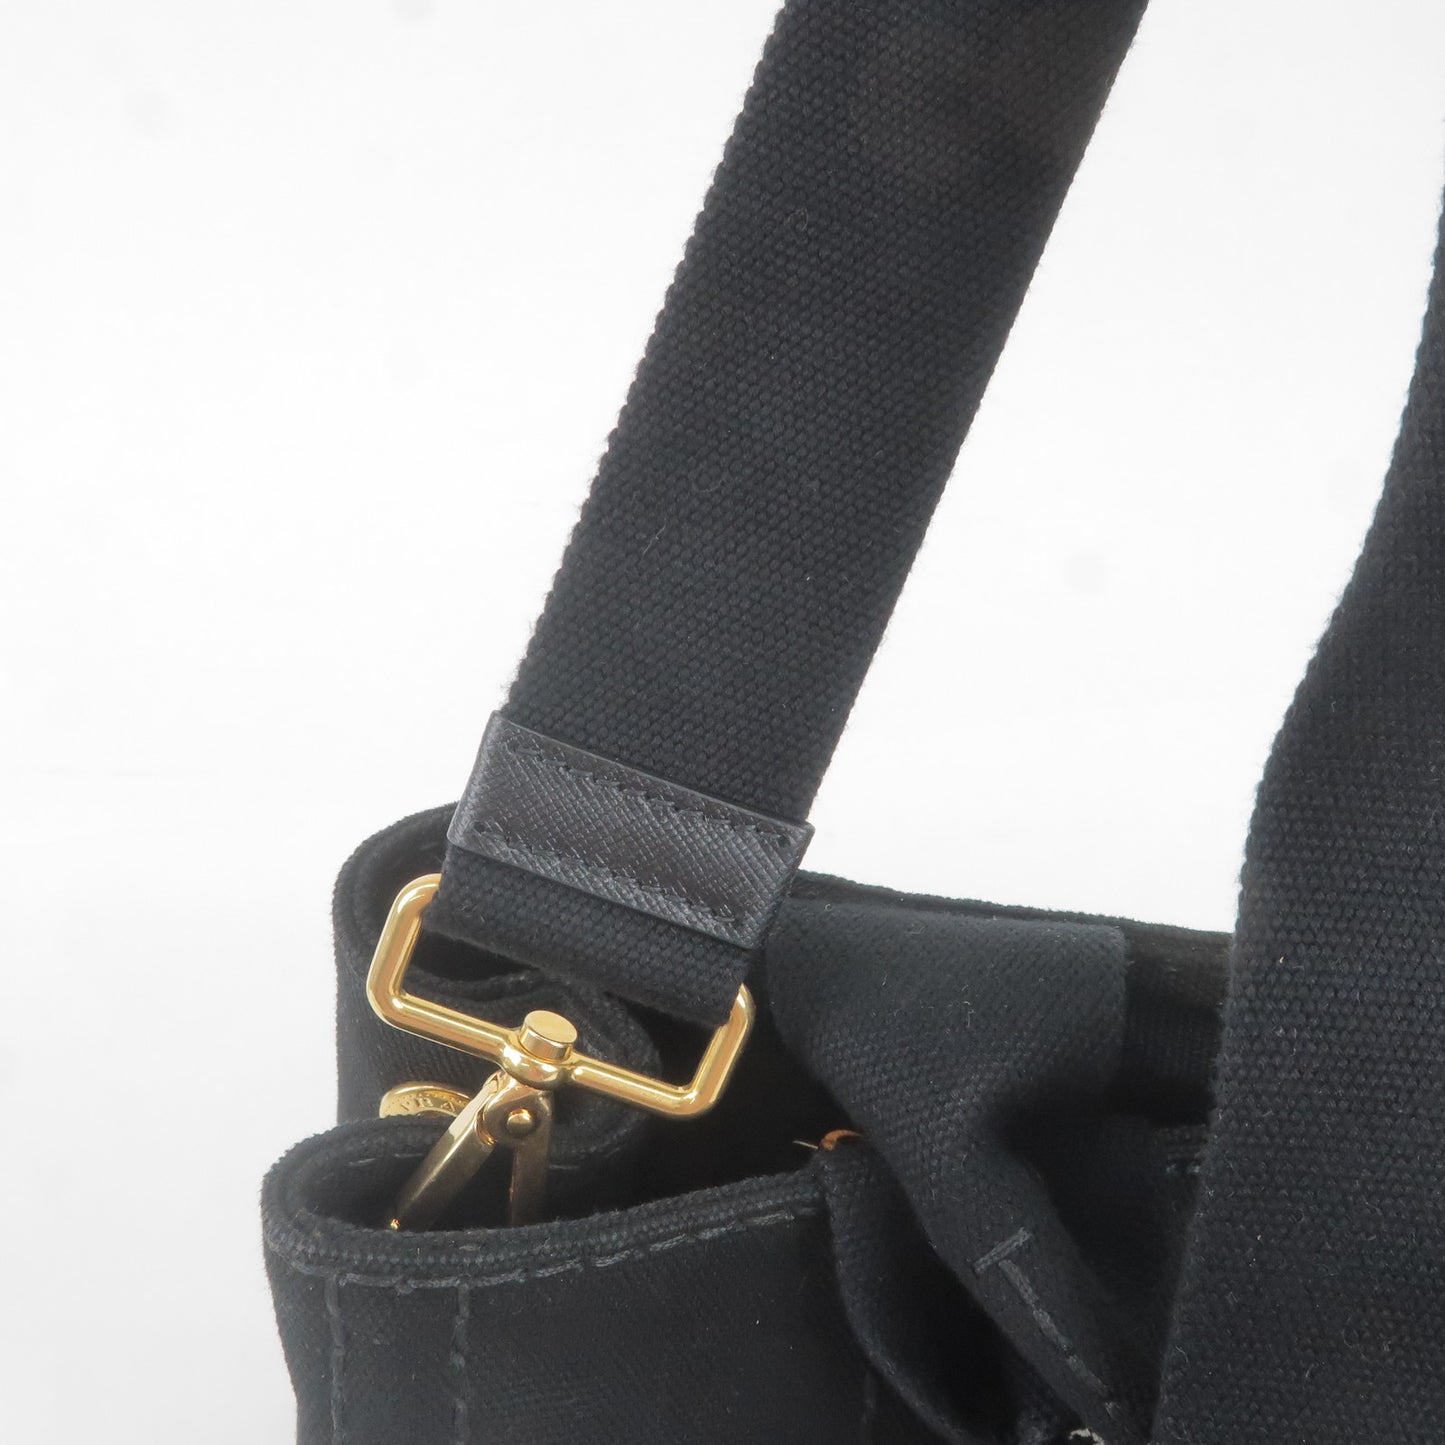 PRADA Canapa Mini Canvas 2Way Bag Shoulder Bag Black B2439G